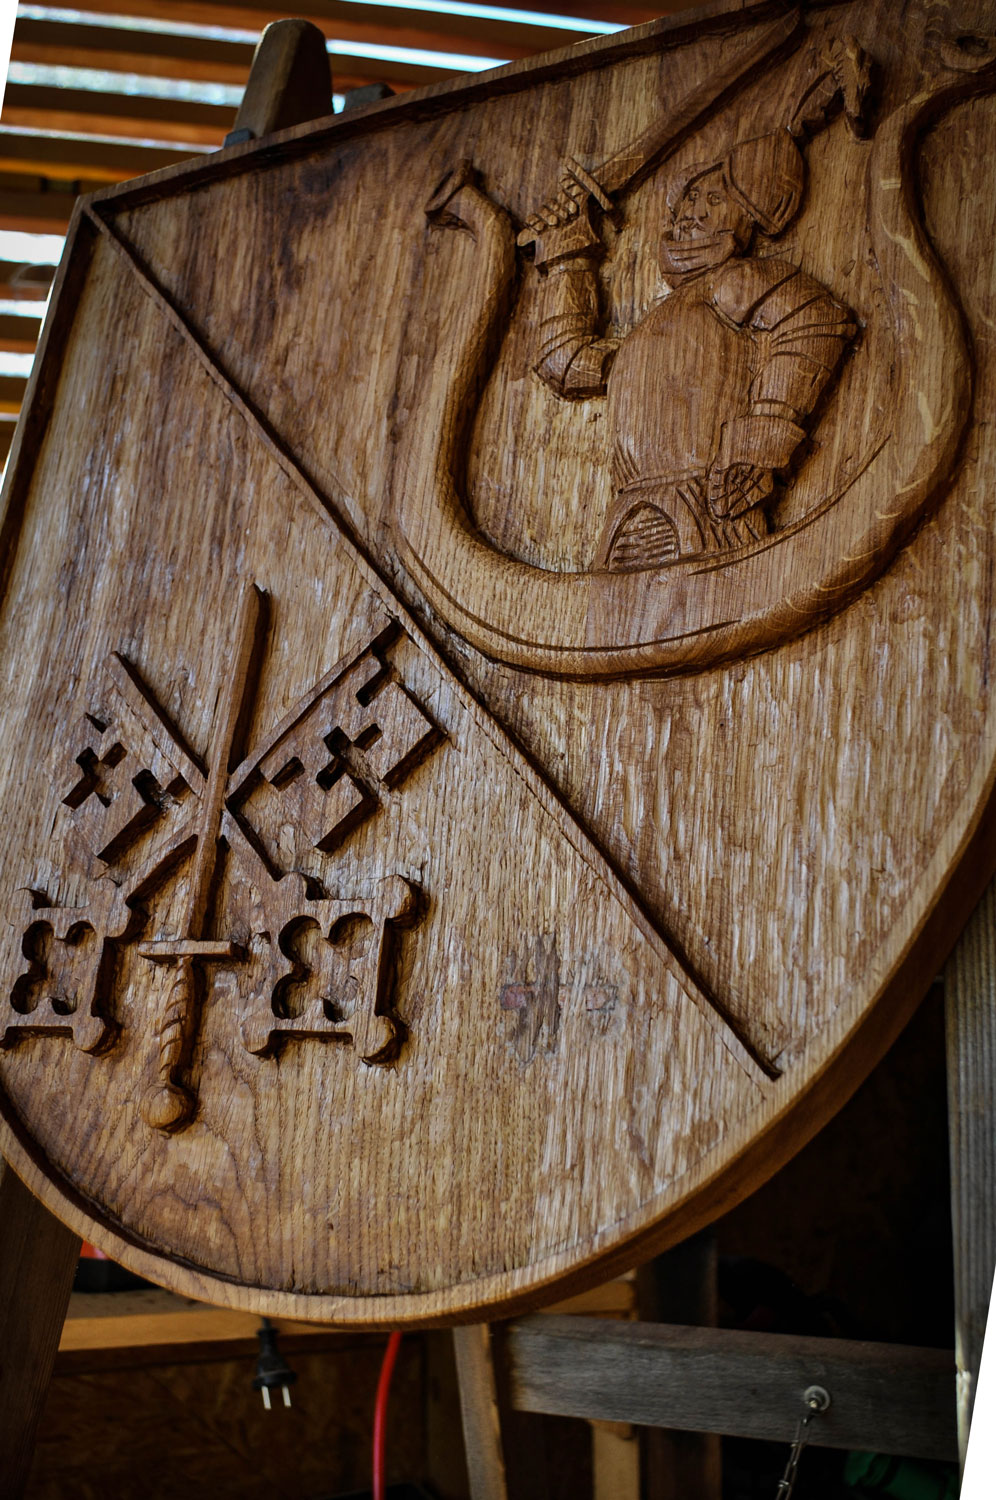 drevorezba-vyrezavani-carving-wood-drevo-socha-znak-erb-emblem-radekzdrazil-20210623-02